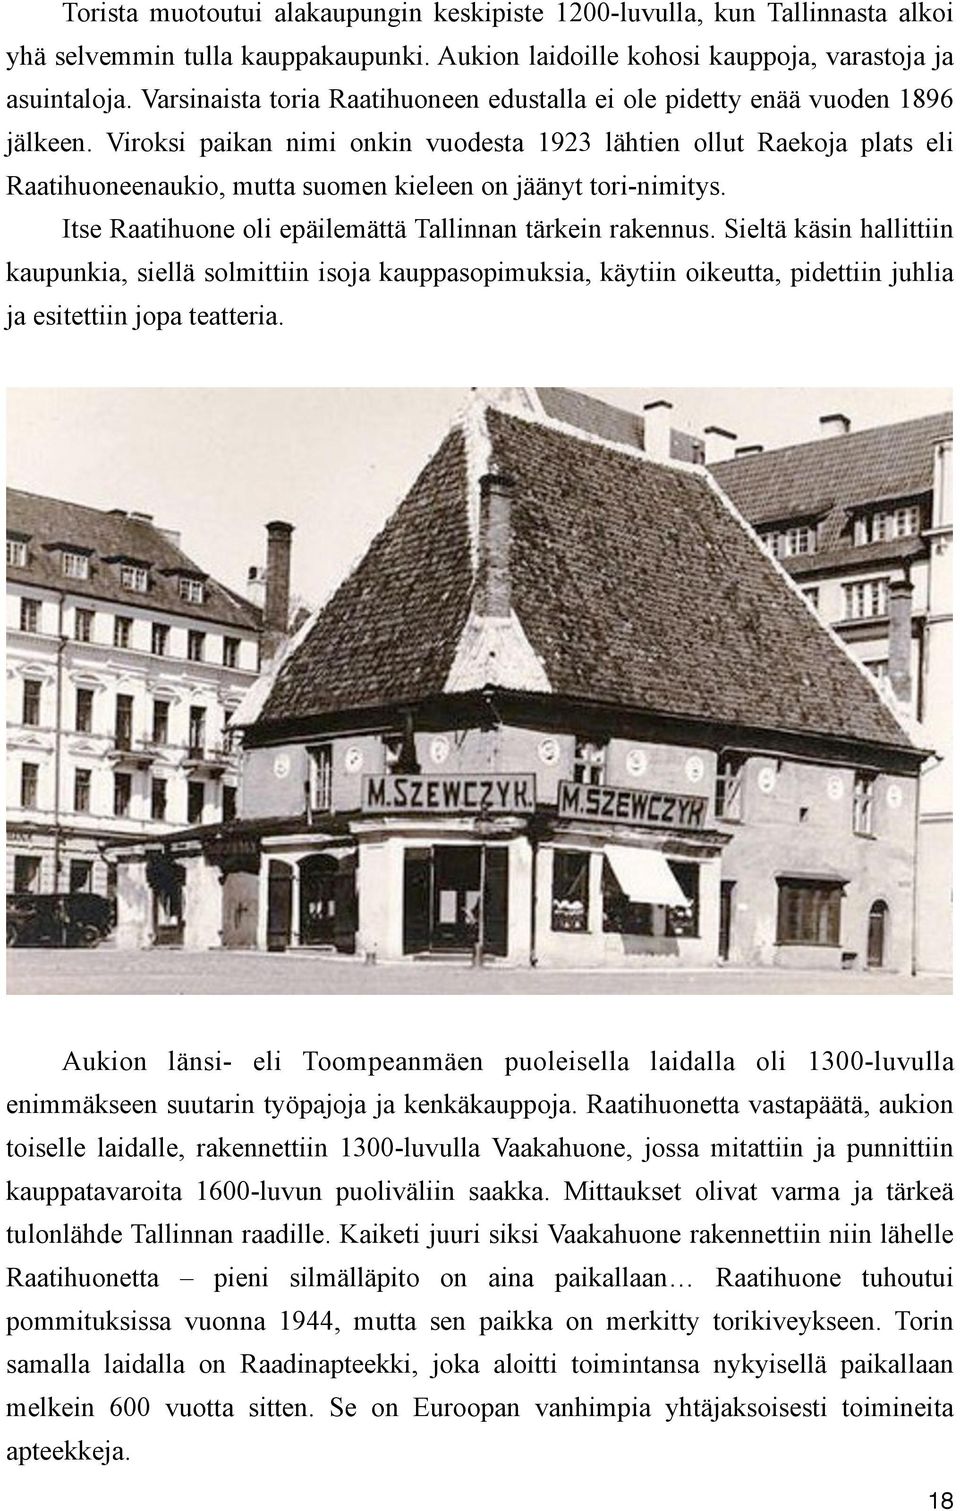 Viroksi paikan nimi onkin vuodesta 1923 lähtien ollut Raekoja plats eli Raatihuoneenaukio, mutta suomen kieleen on jäänyt tori-nimitys. Itse Raatihuone oli epäilemättä Tallinnan tärkein rakennus.